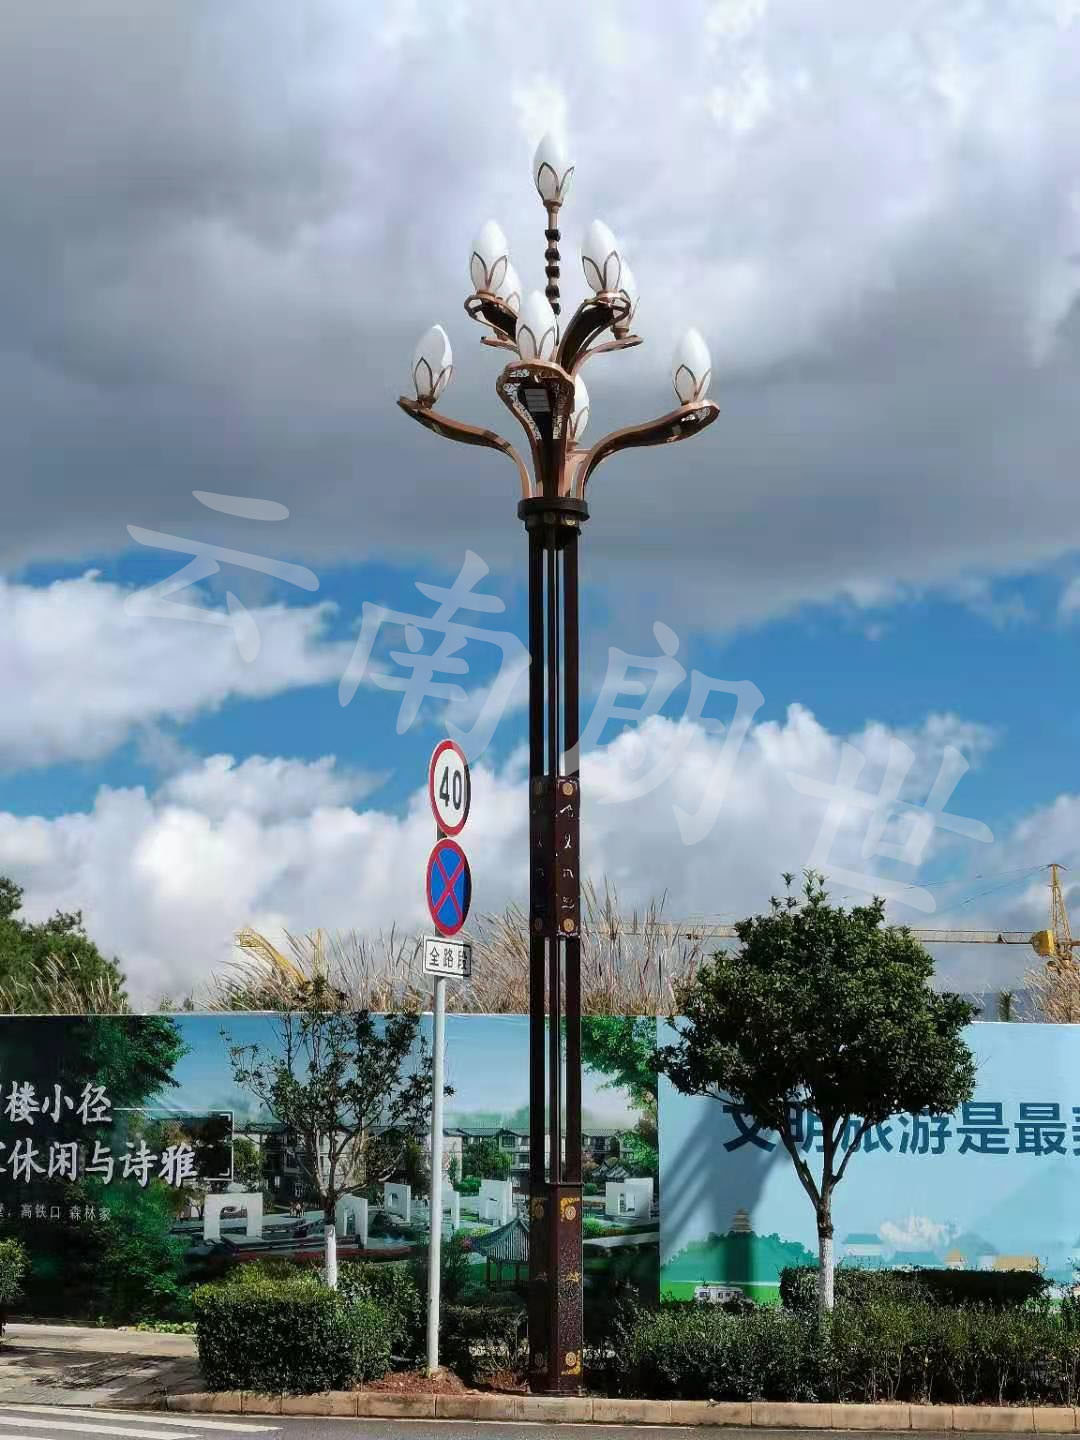 丽江市政道路玉兰灯安装拍摄